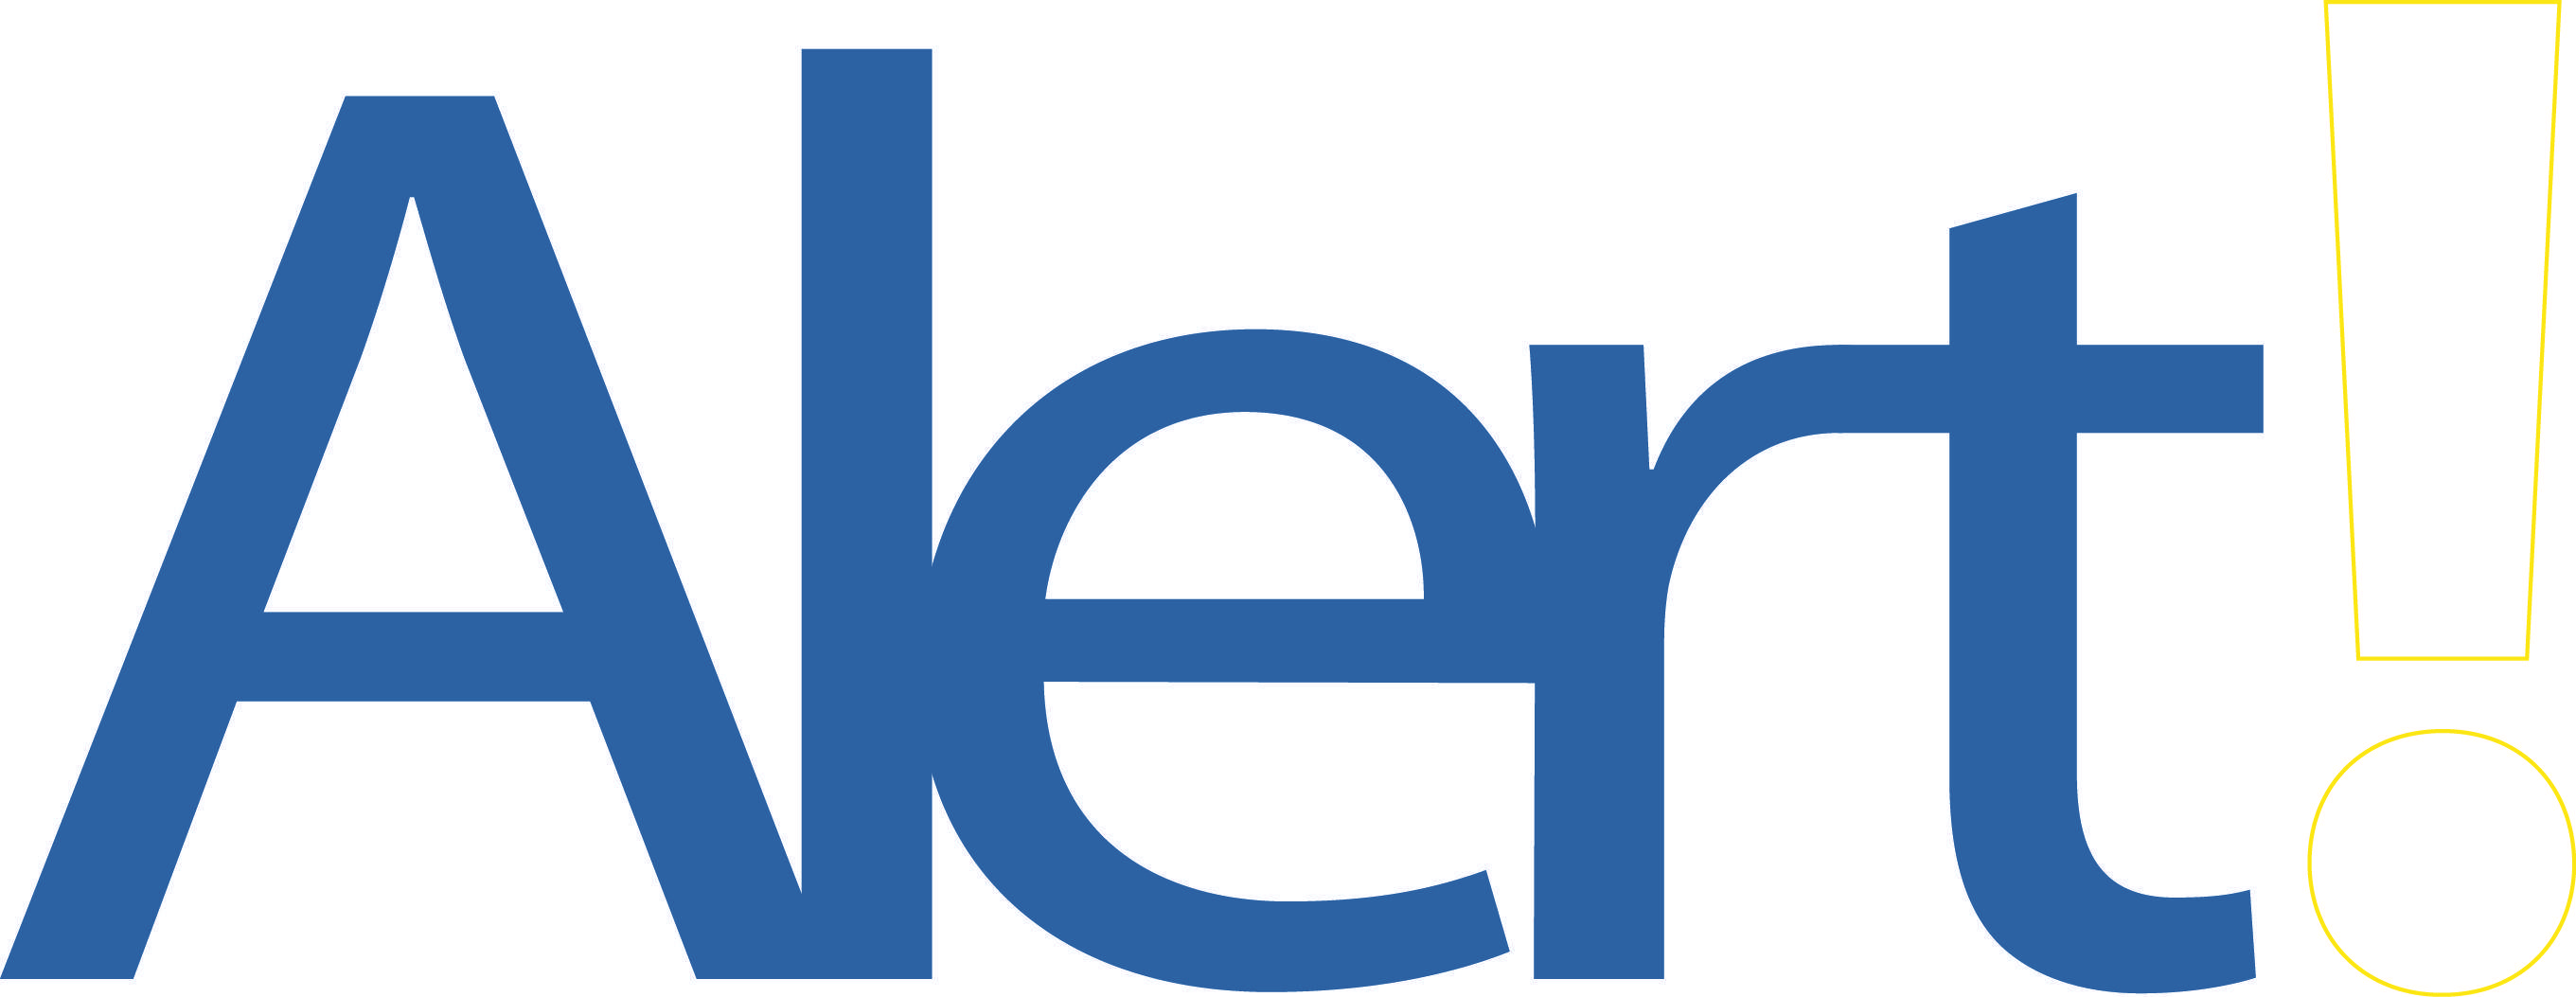 Google Alerts Logo - Logos